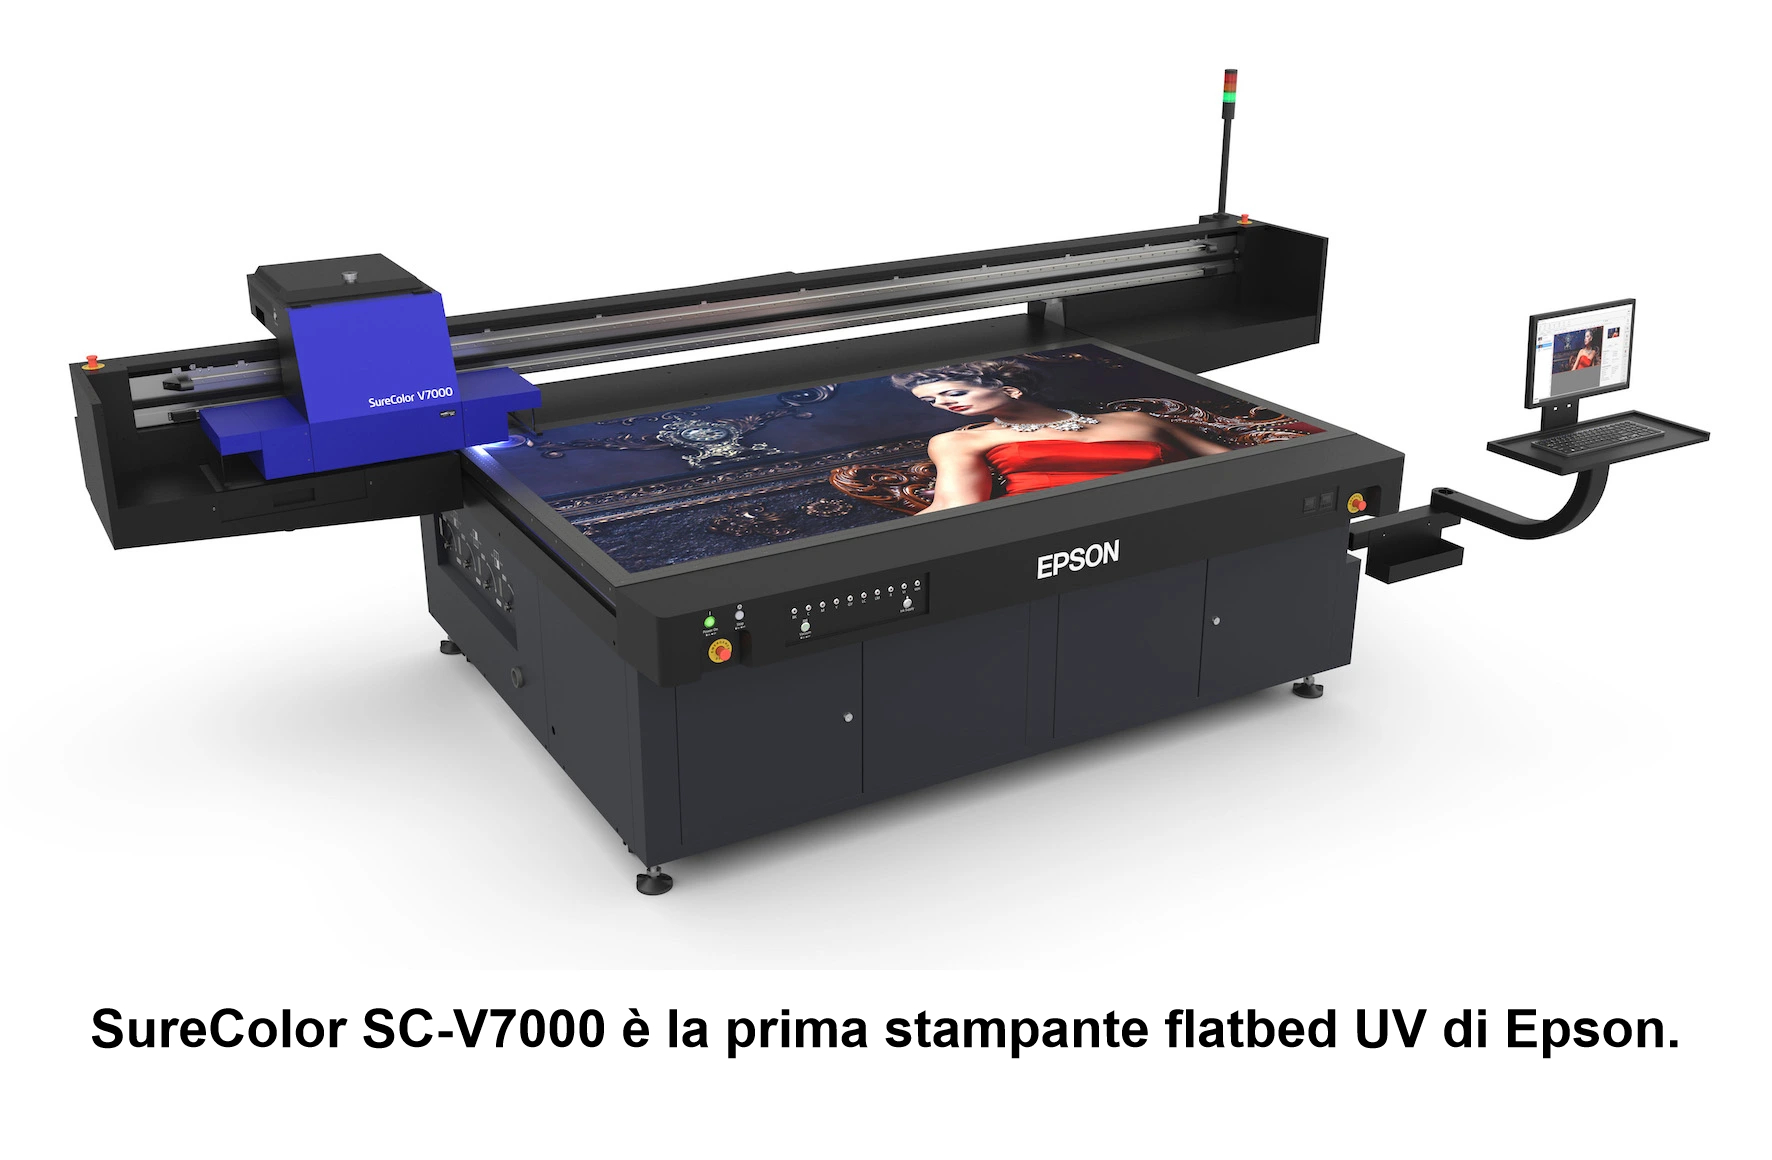 SureColor-SC-V7000-è-la-prima-stampante-piana-UV-LED-di-Epson-(sx)-300dpi-15cm-con-dida1